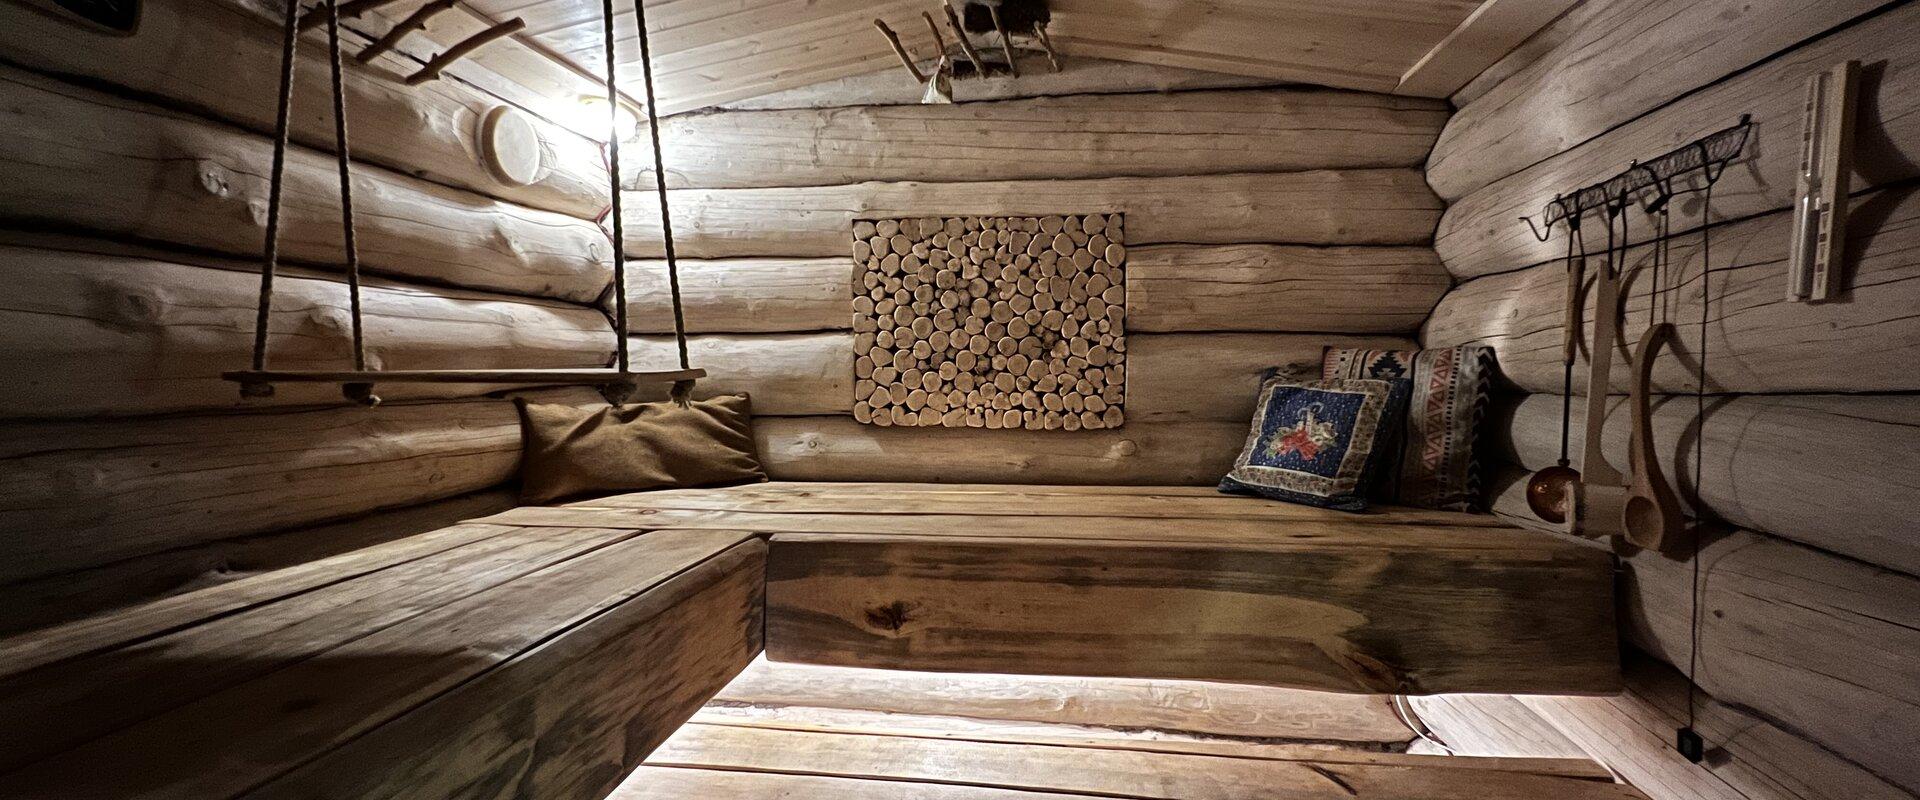 Metsakuurortin venäläinen sauna